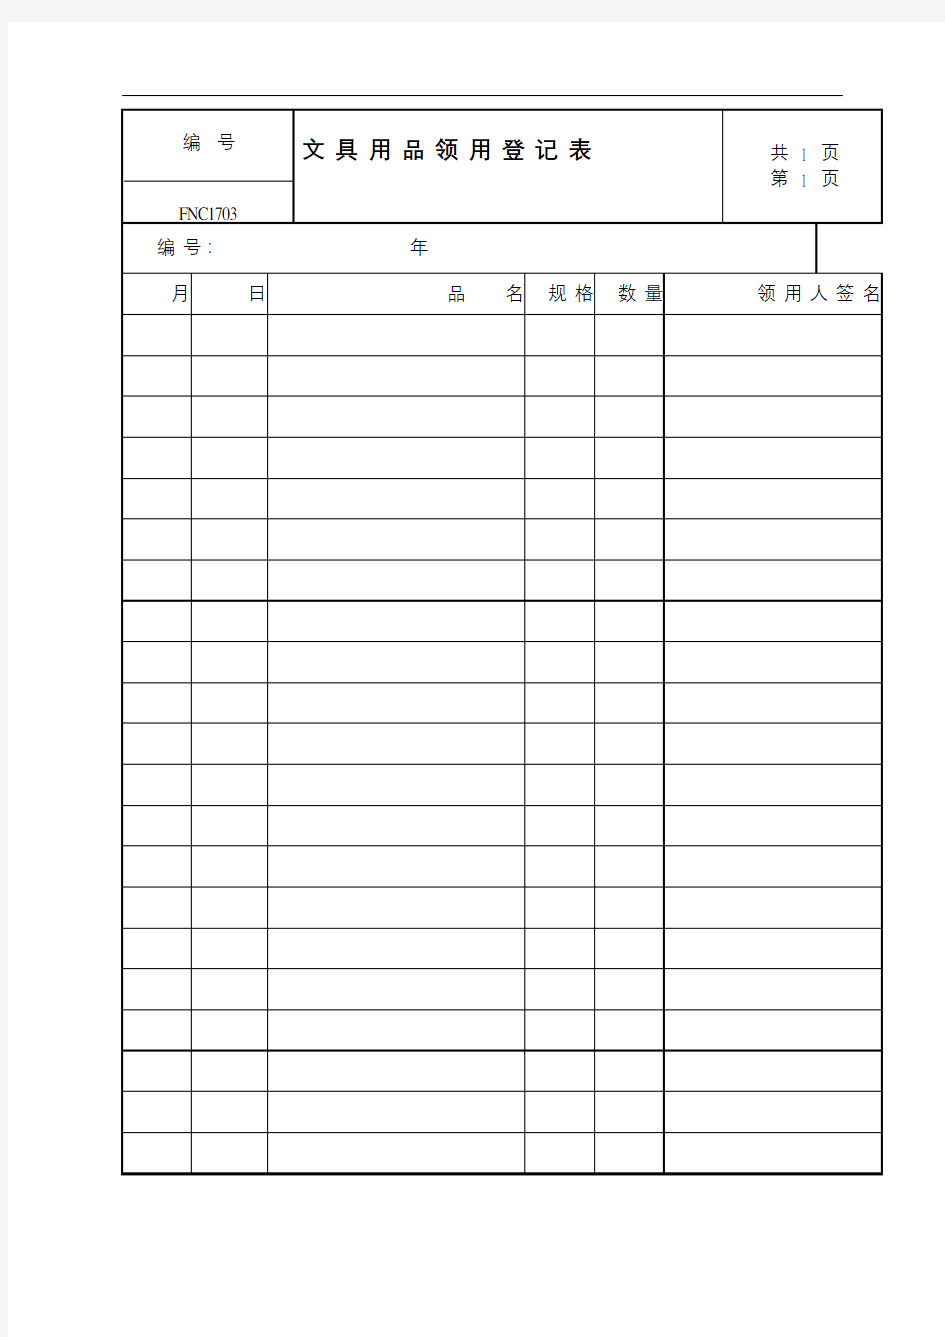 行政管理系统文具用品领用登记表